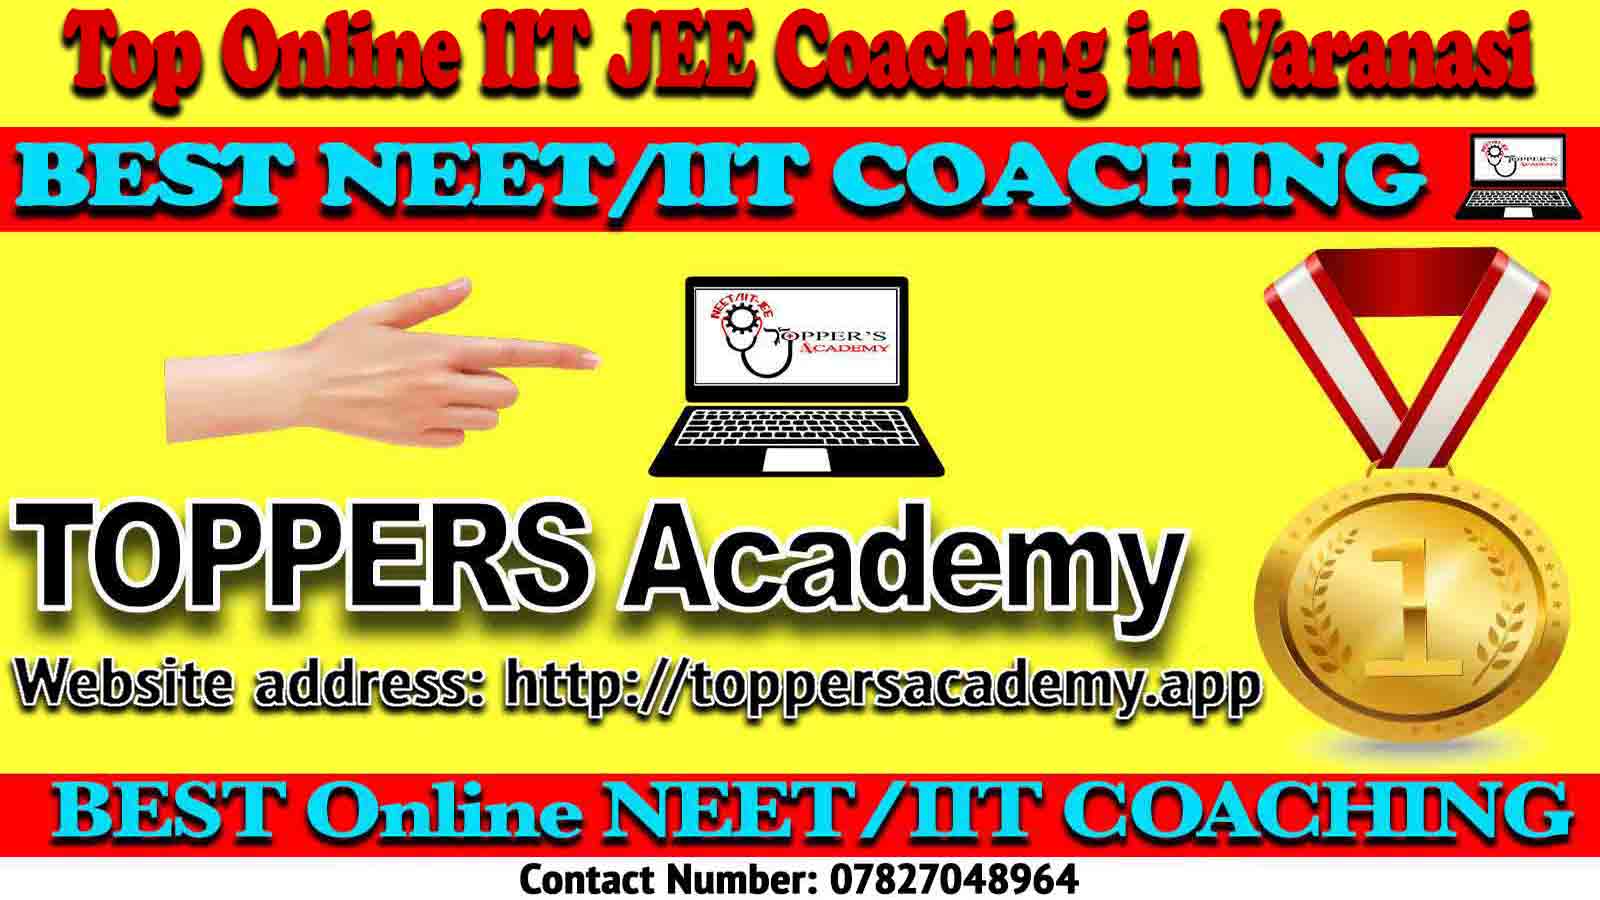 Best Online IIT JEE Coaching in Varanasi